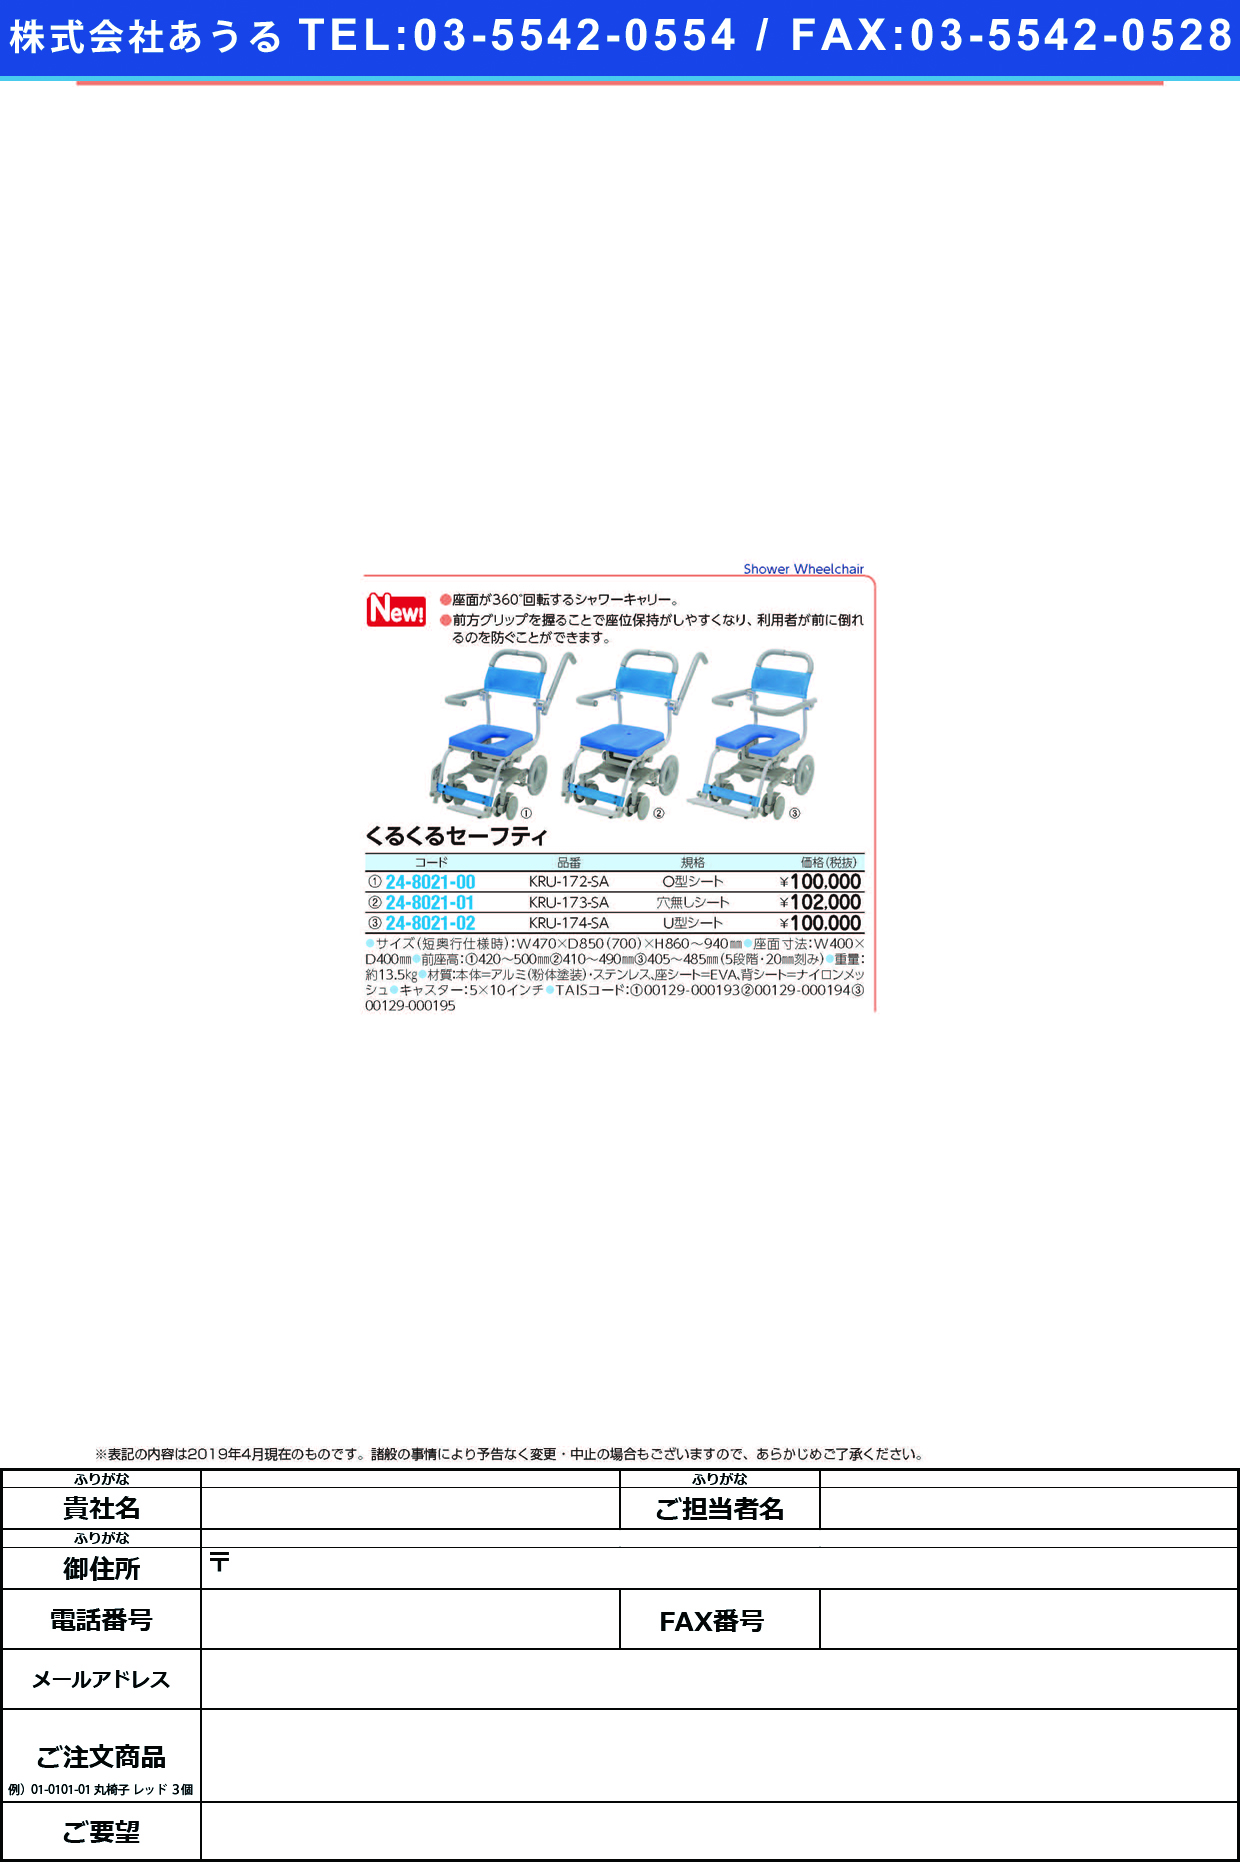 (24-8021-00)くるくるセーフティ（Ｏ型シート）KRU-172-SA ｸﾙｸﾙﾁｪｱD(Oｶﾞﾀｼｰﾄ)(ウチエ)【1台単位】【2019年カタログ商品】